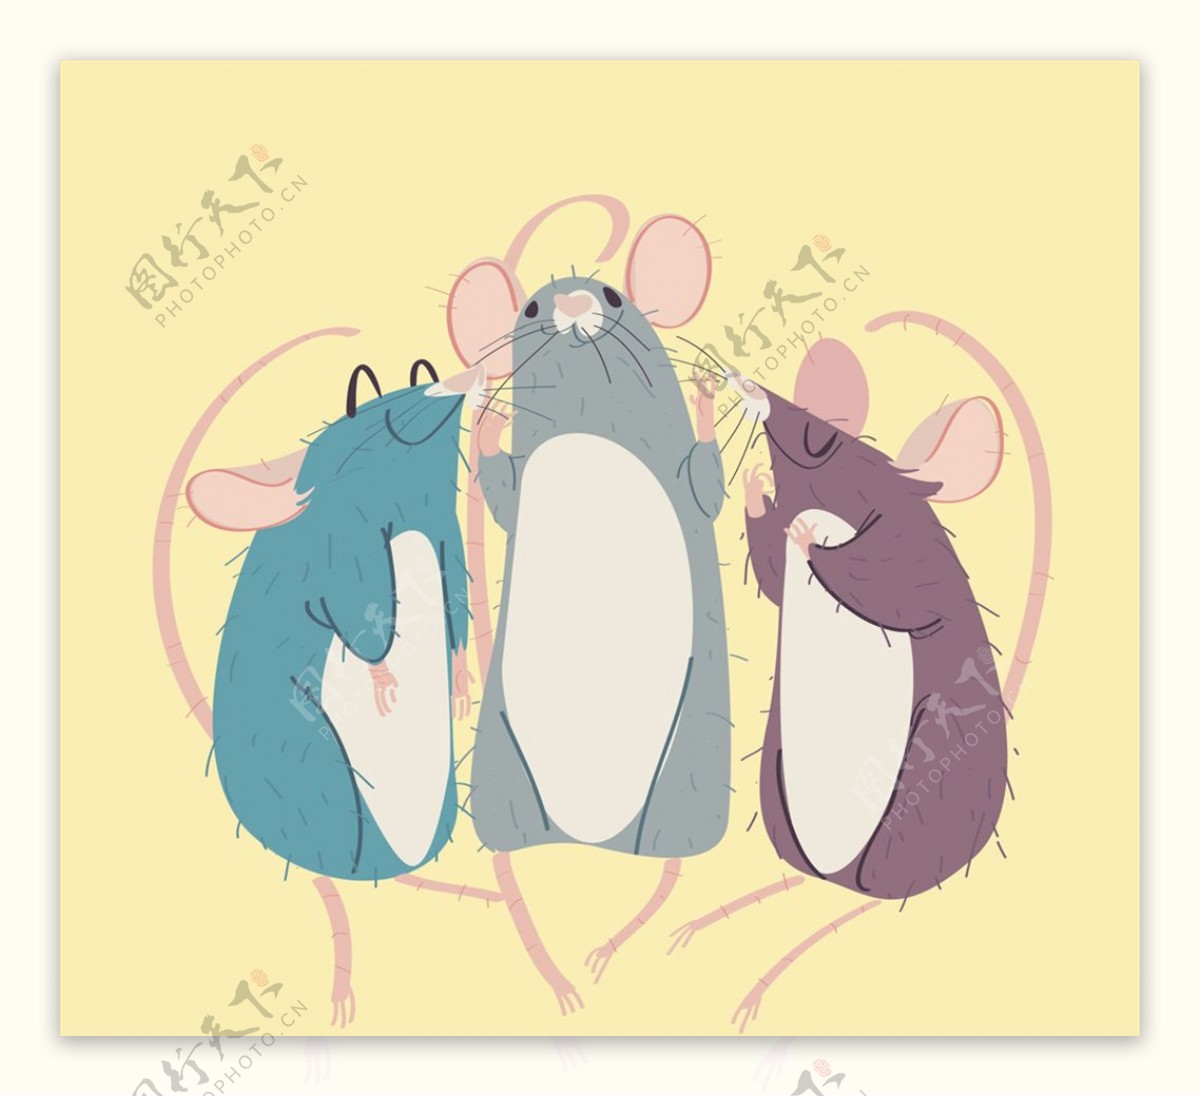 彩绘3只老鼠矢量素材